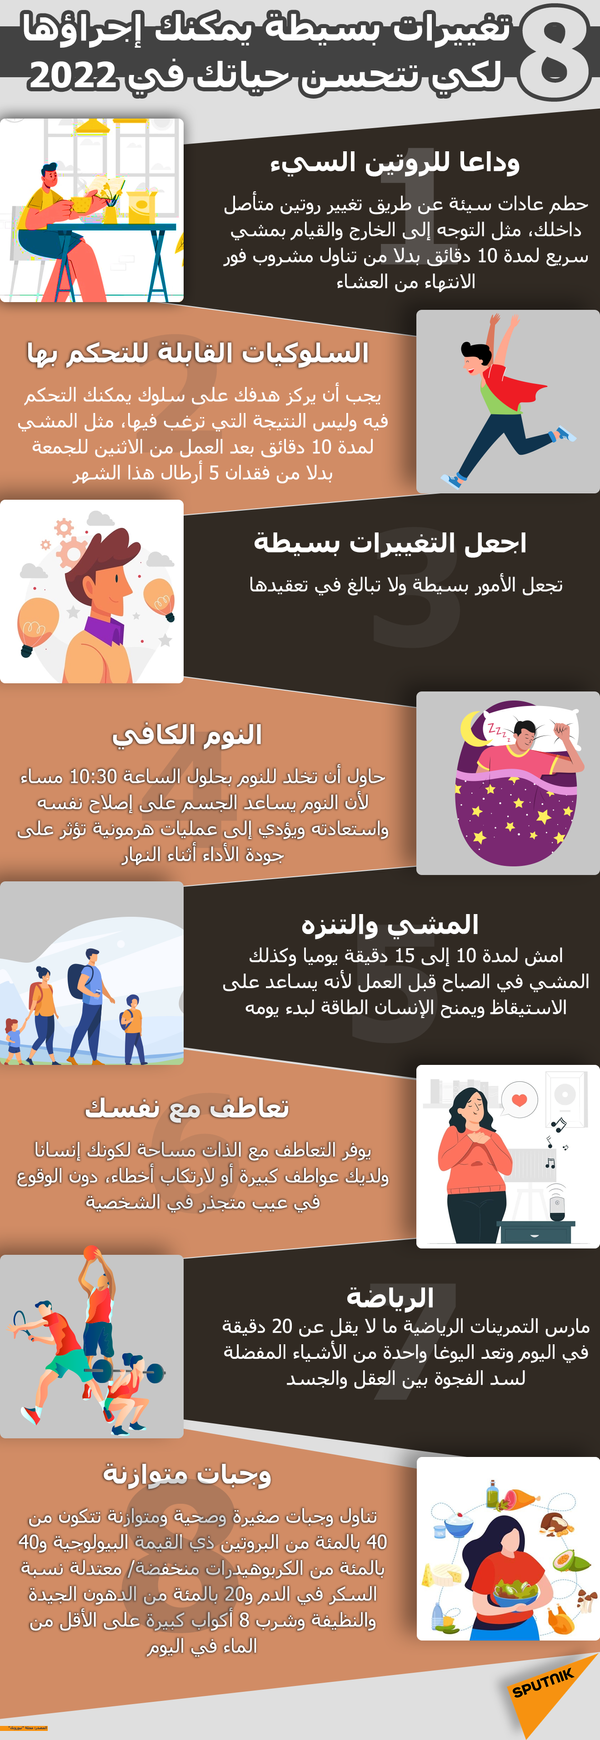 8 تغييرات بسيطة يمكنك إجراؤها لكي تتحسن حياتك في 2022 - سبوتنيك عربي